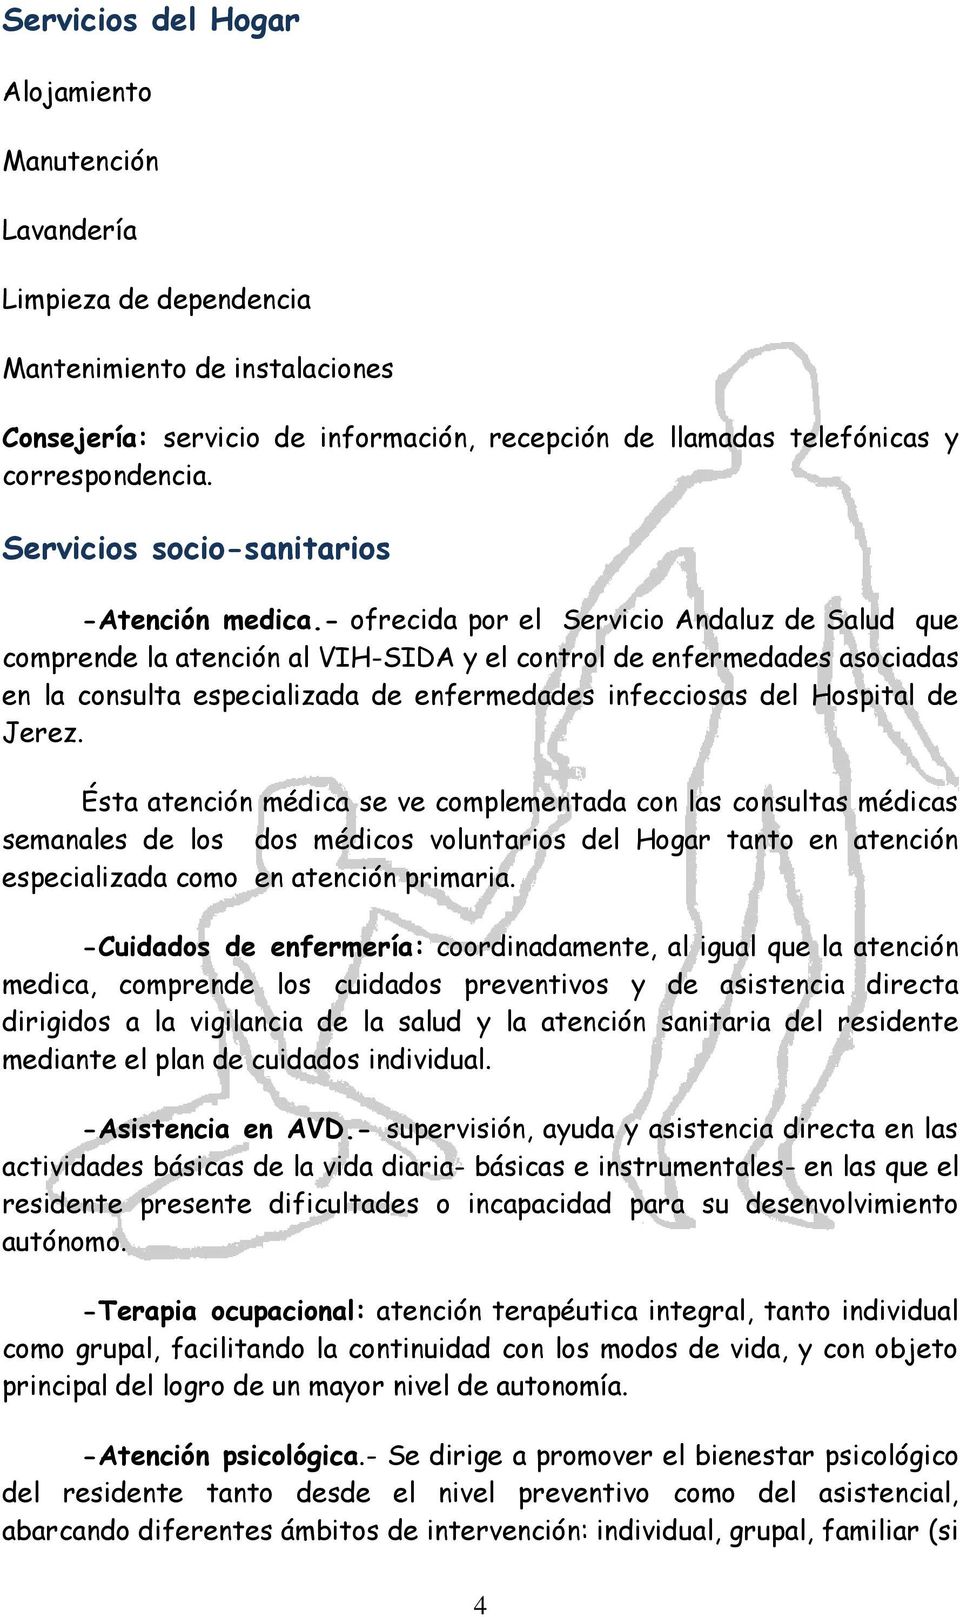 - ofrecida por el Servicio Andaluz de Salud que comprende la atención al VIH-SIDA y el control de enfermedades asociadas en la consulta especializada de enfermedades infecciosas del Hospital de Jerez.